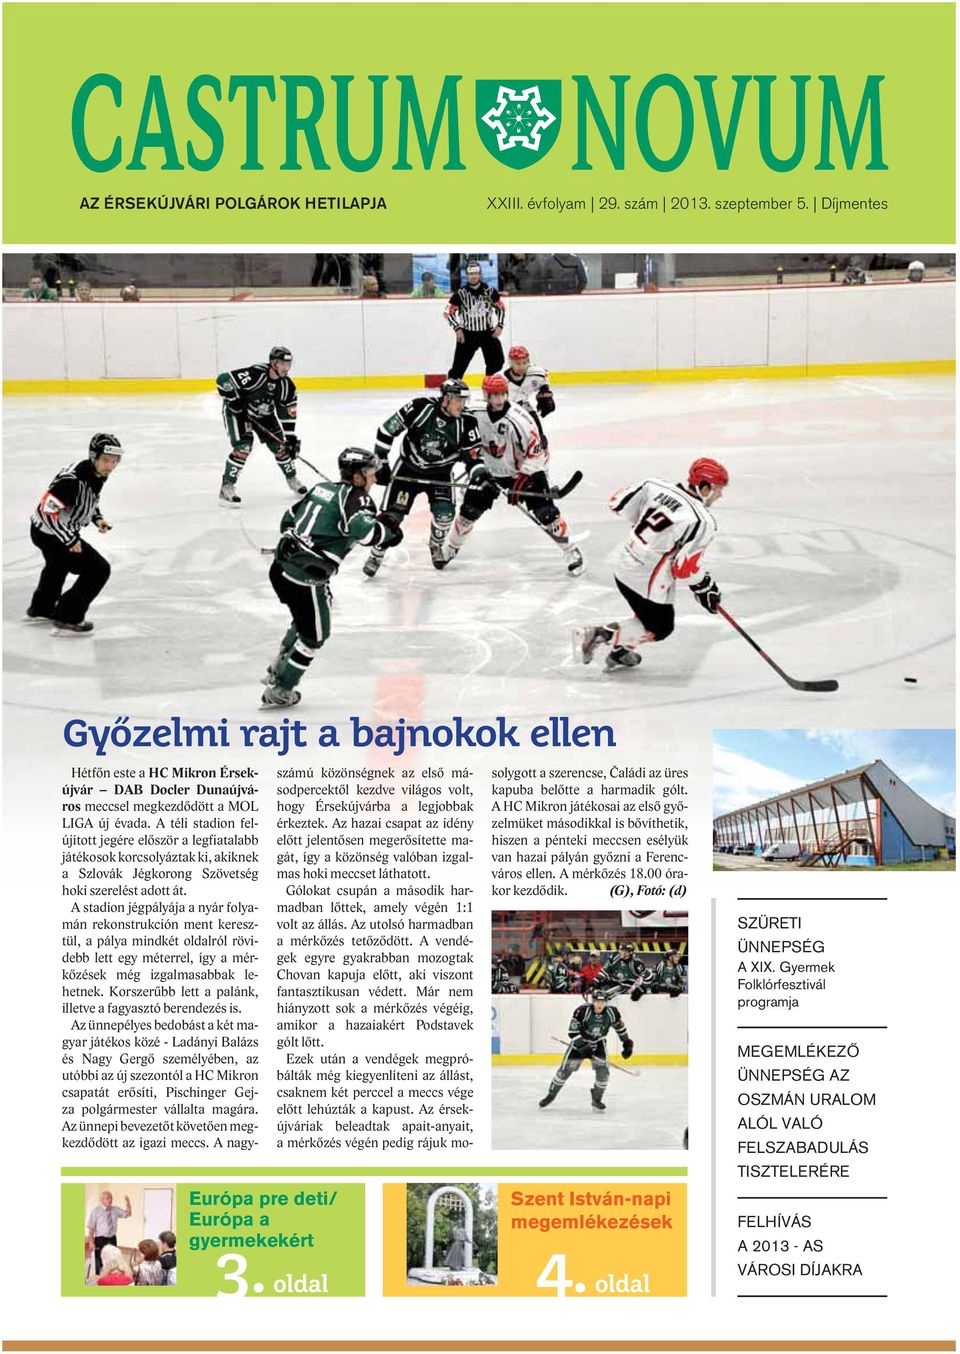 A téli stadion felújított jegére először a legfiatalabb játékosok korcsolyáztak ki, akiknek a Szlovák Jégkorong Szövetség hoki szerelést adott át.